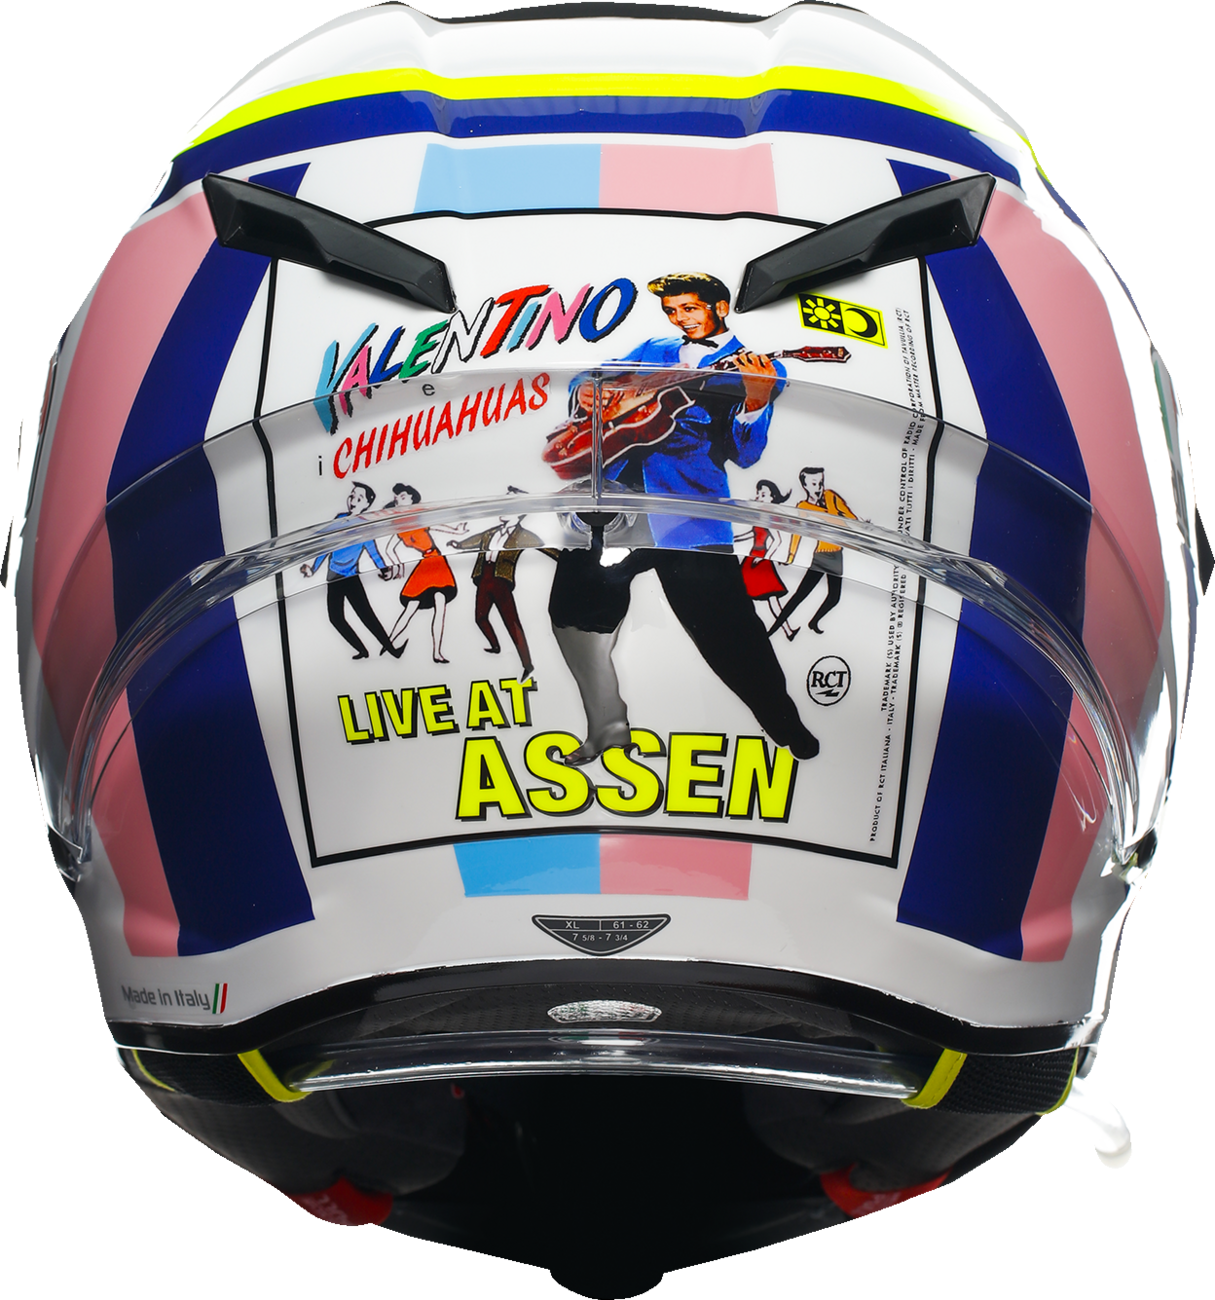 AGV Pista GP RR Helmet - Assen 2007 - 2XL 21183560020092X